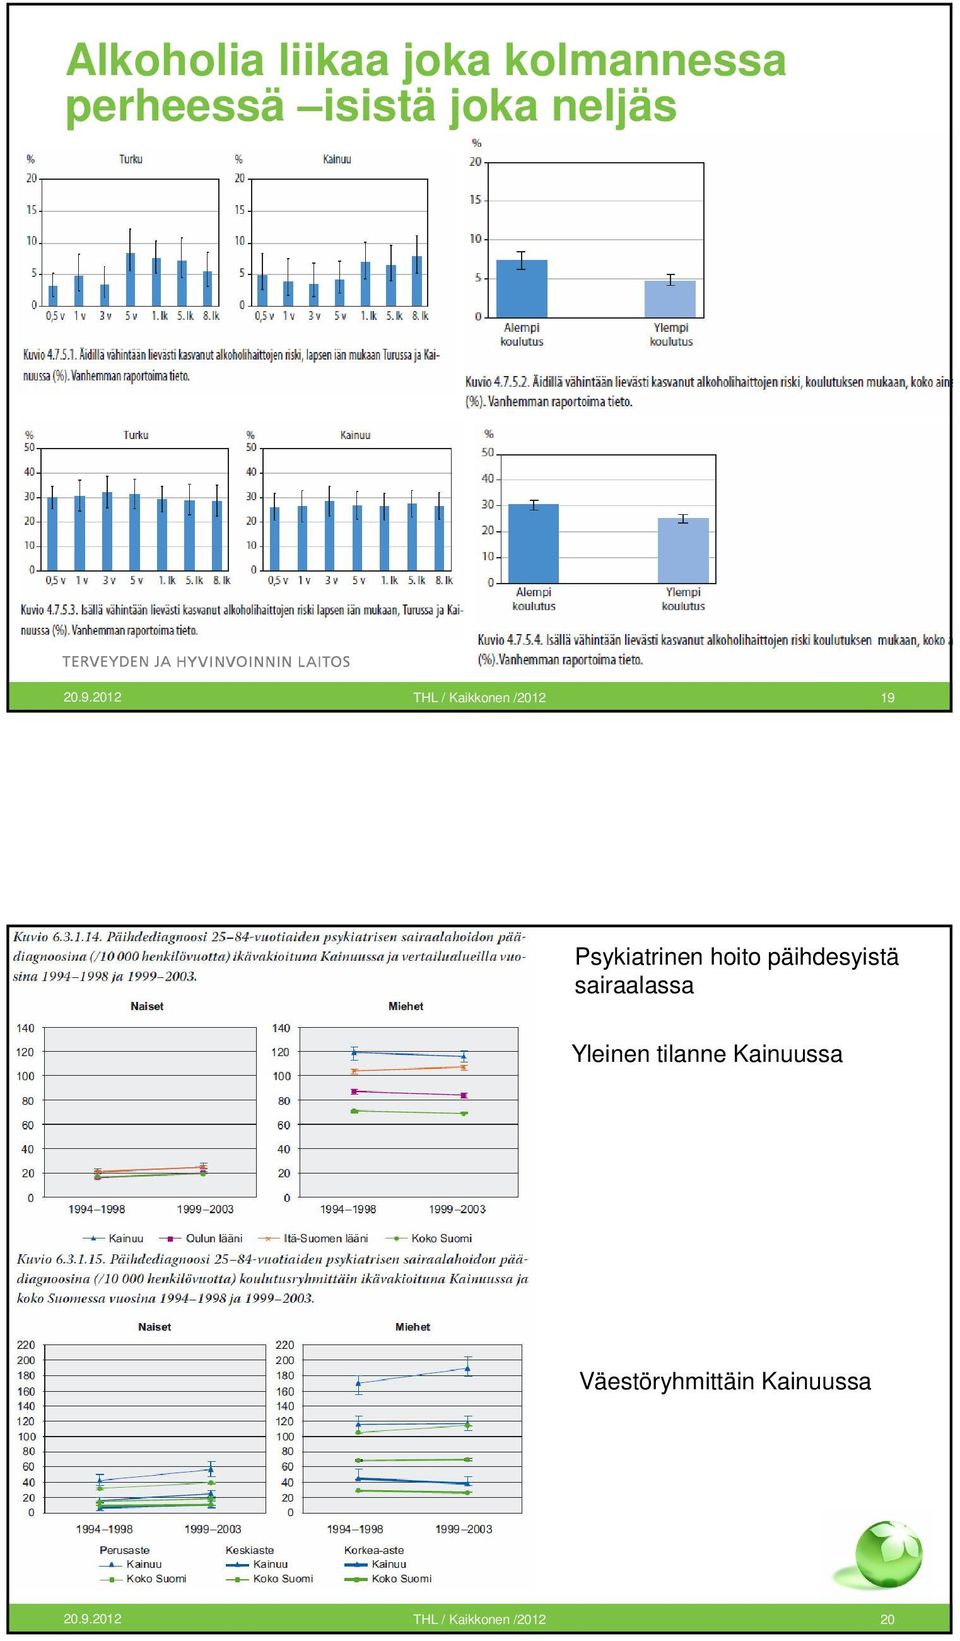 2012 THL / Kaikkonen /2012 19 Psykiatrinen hoito